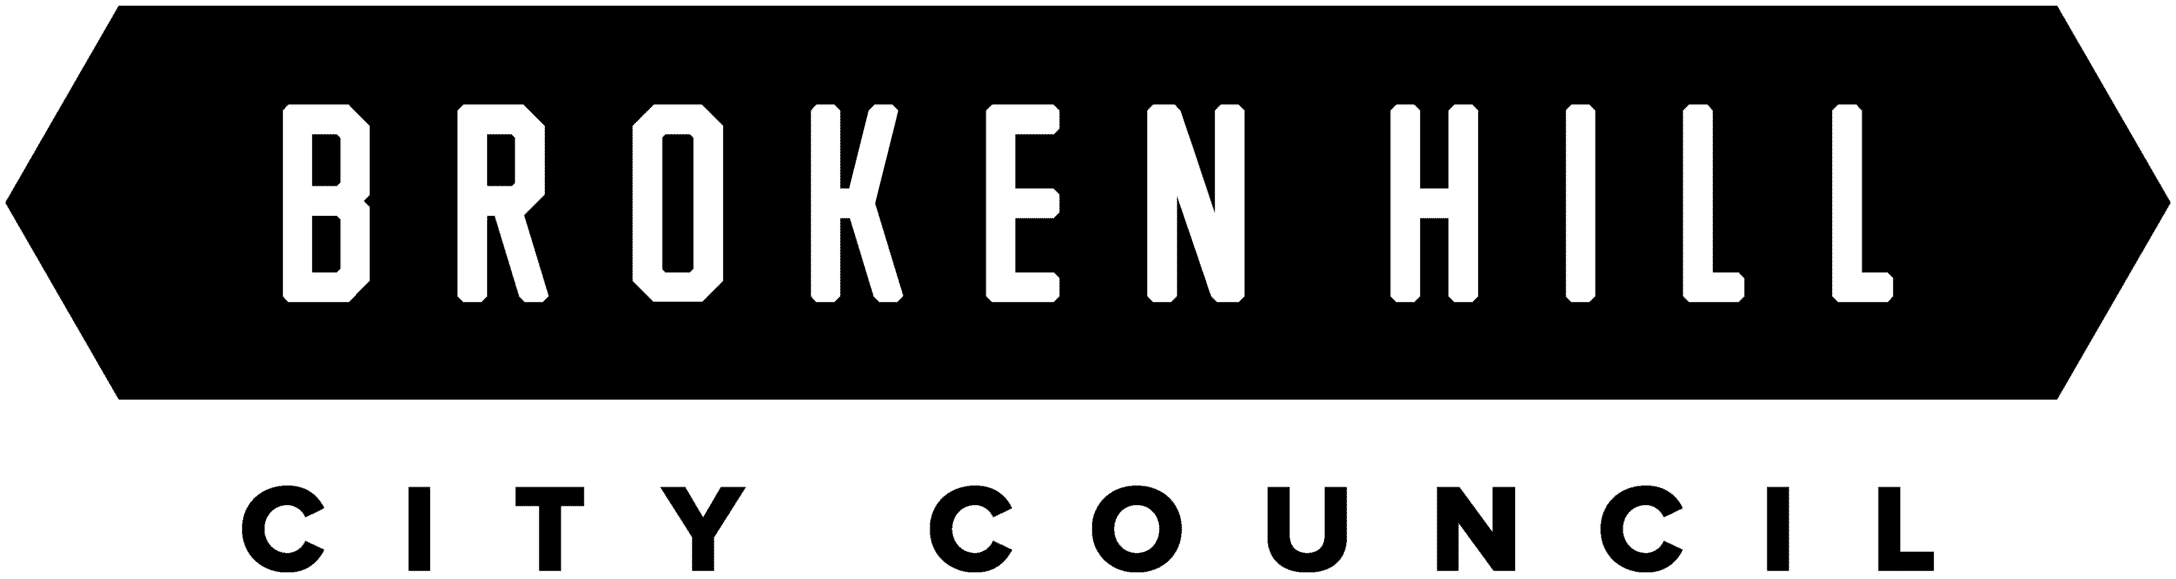 Broken Hill City Council logo